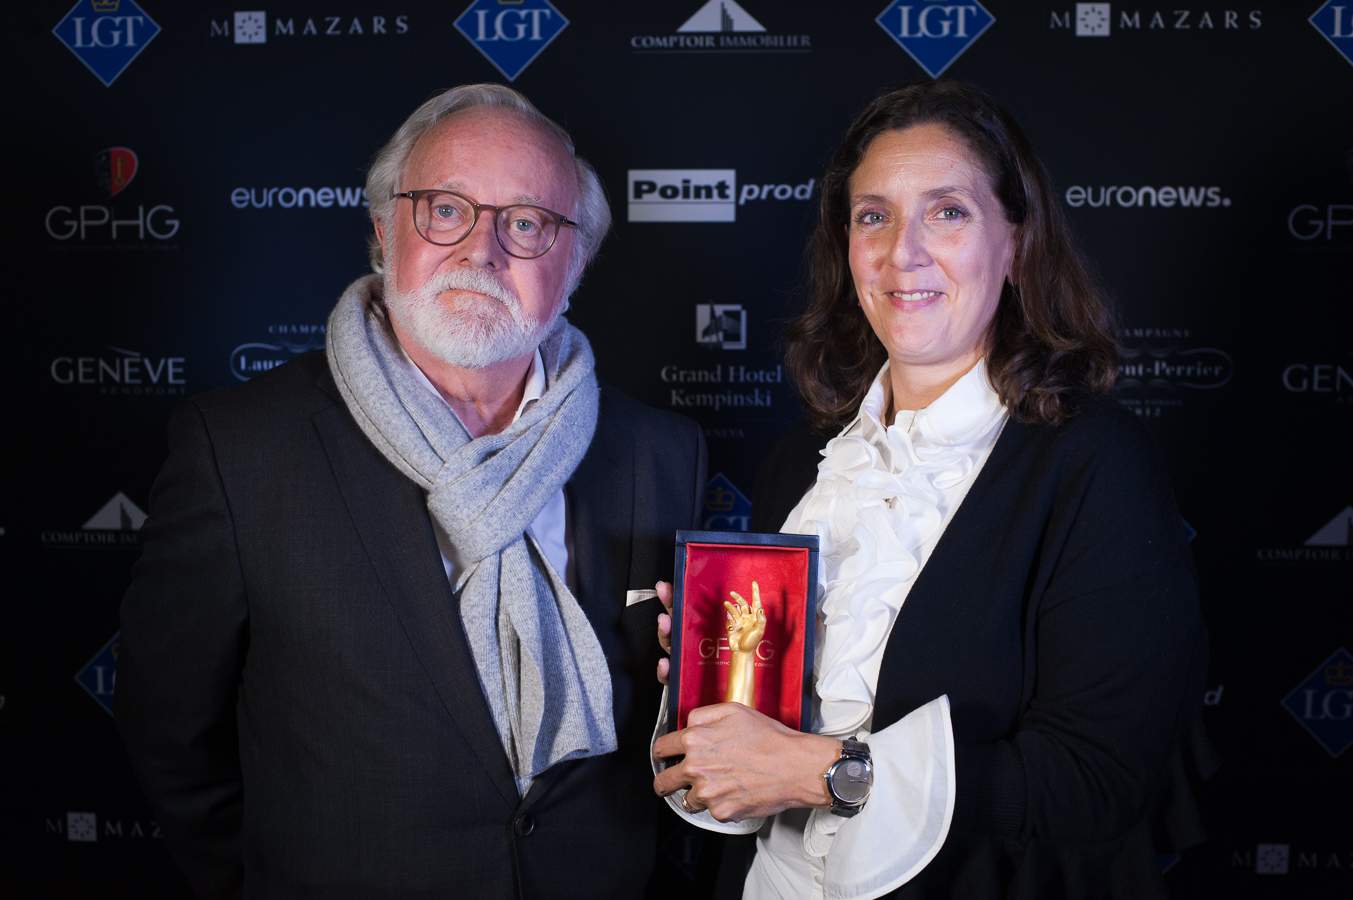 Laurent Ferrier, Founder and Vanessa Monestel, CEO Laurent Ferrier, winners of the Men’s Complication Watch Prize 2018